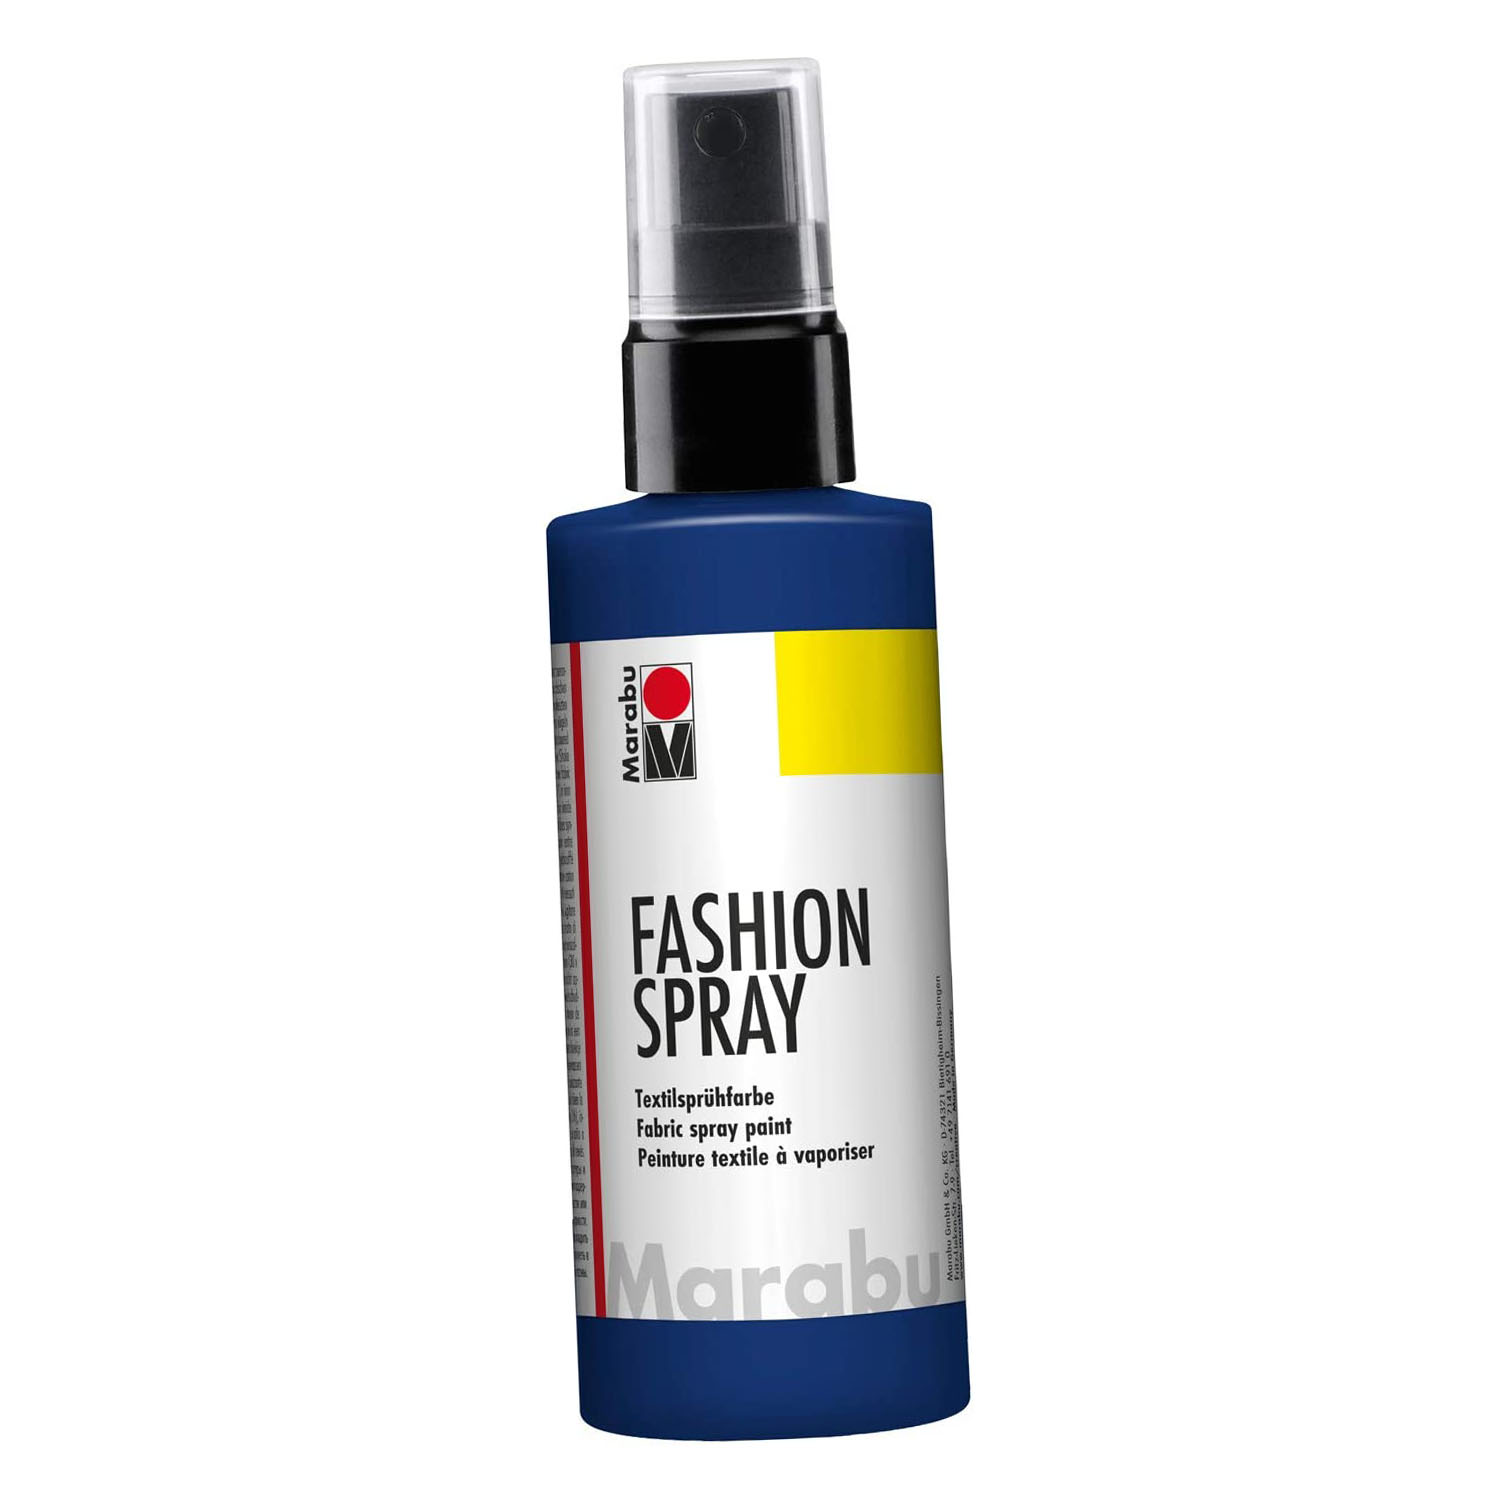 Marabu Textilsprhfarbe Fashion-Spray, nachtblau, 100 ml